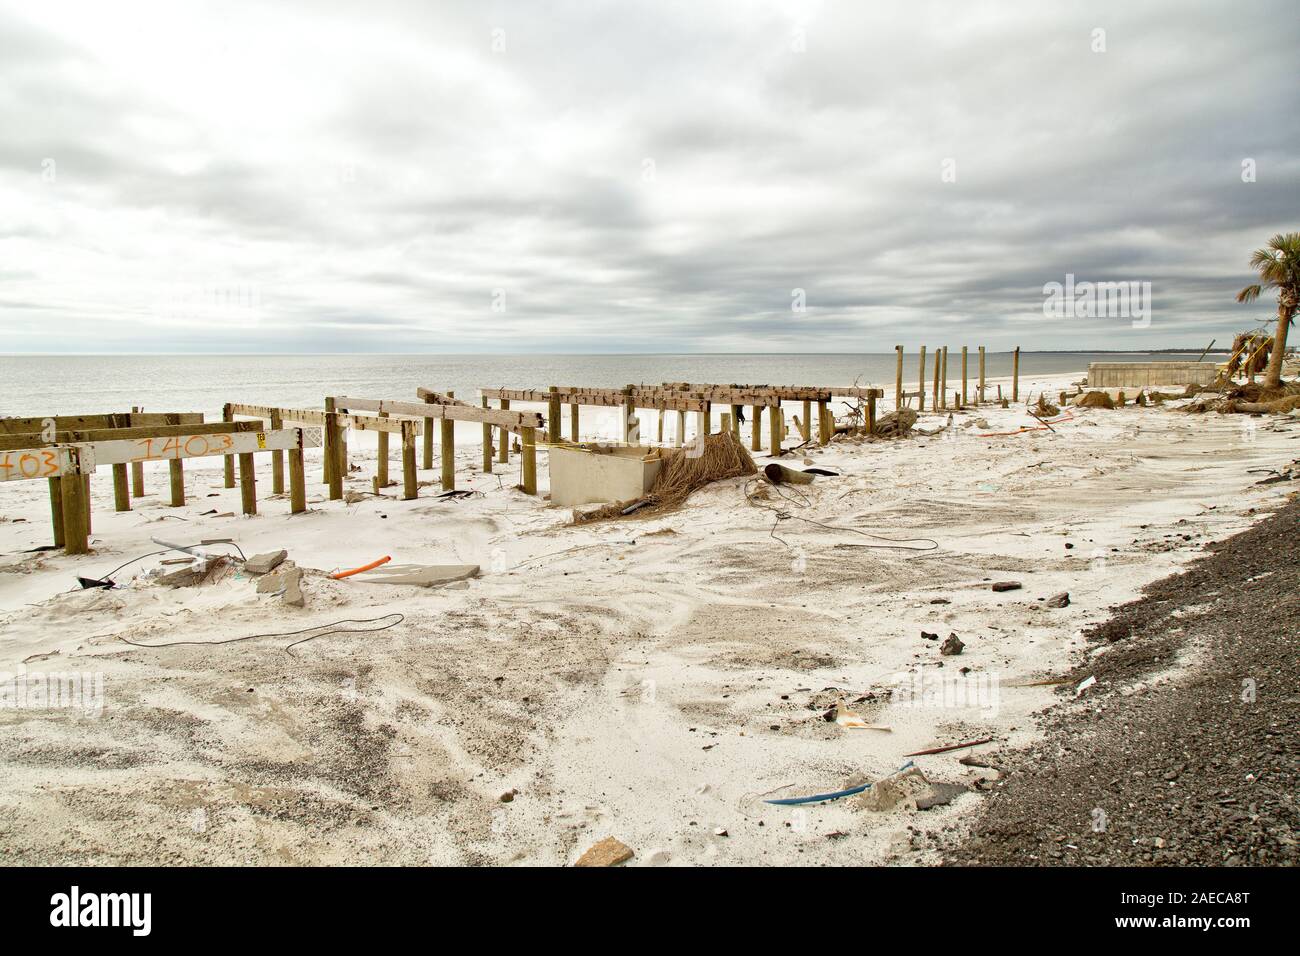 Uragano 'Michael' 2018 distruzione, vicino a Spiaggia del Messico. Vacante albergo sulla spiaggia di basi rimanente/fondazioni di case distrutte, Florida. Foto Stock